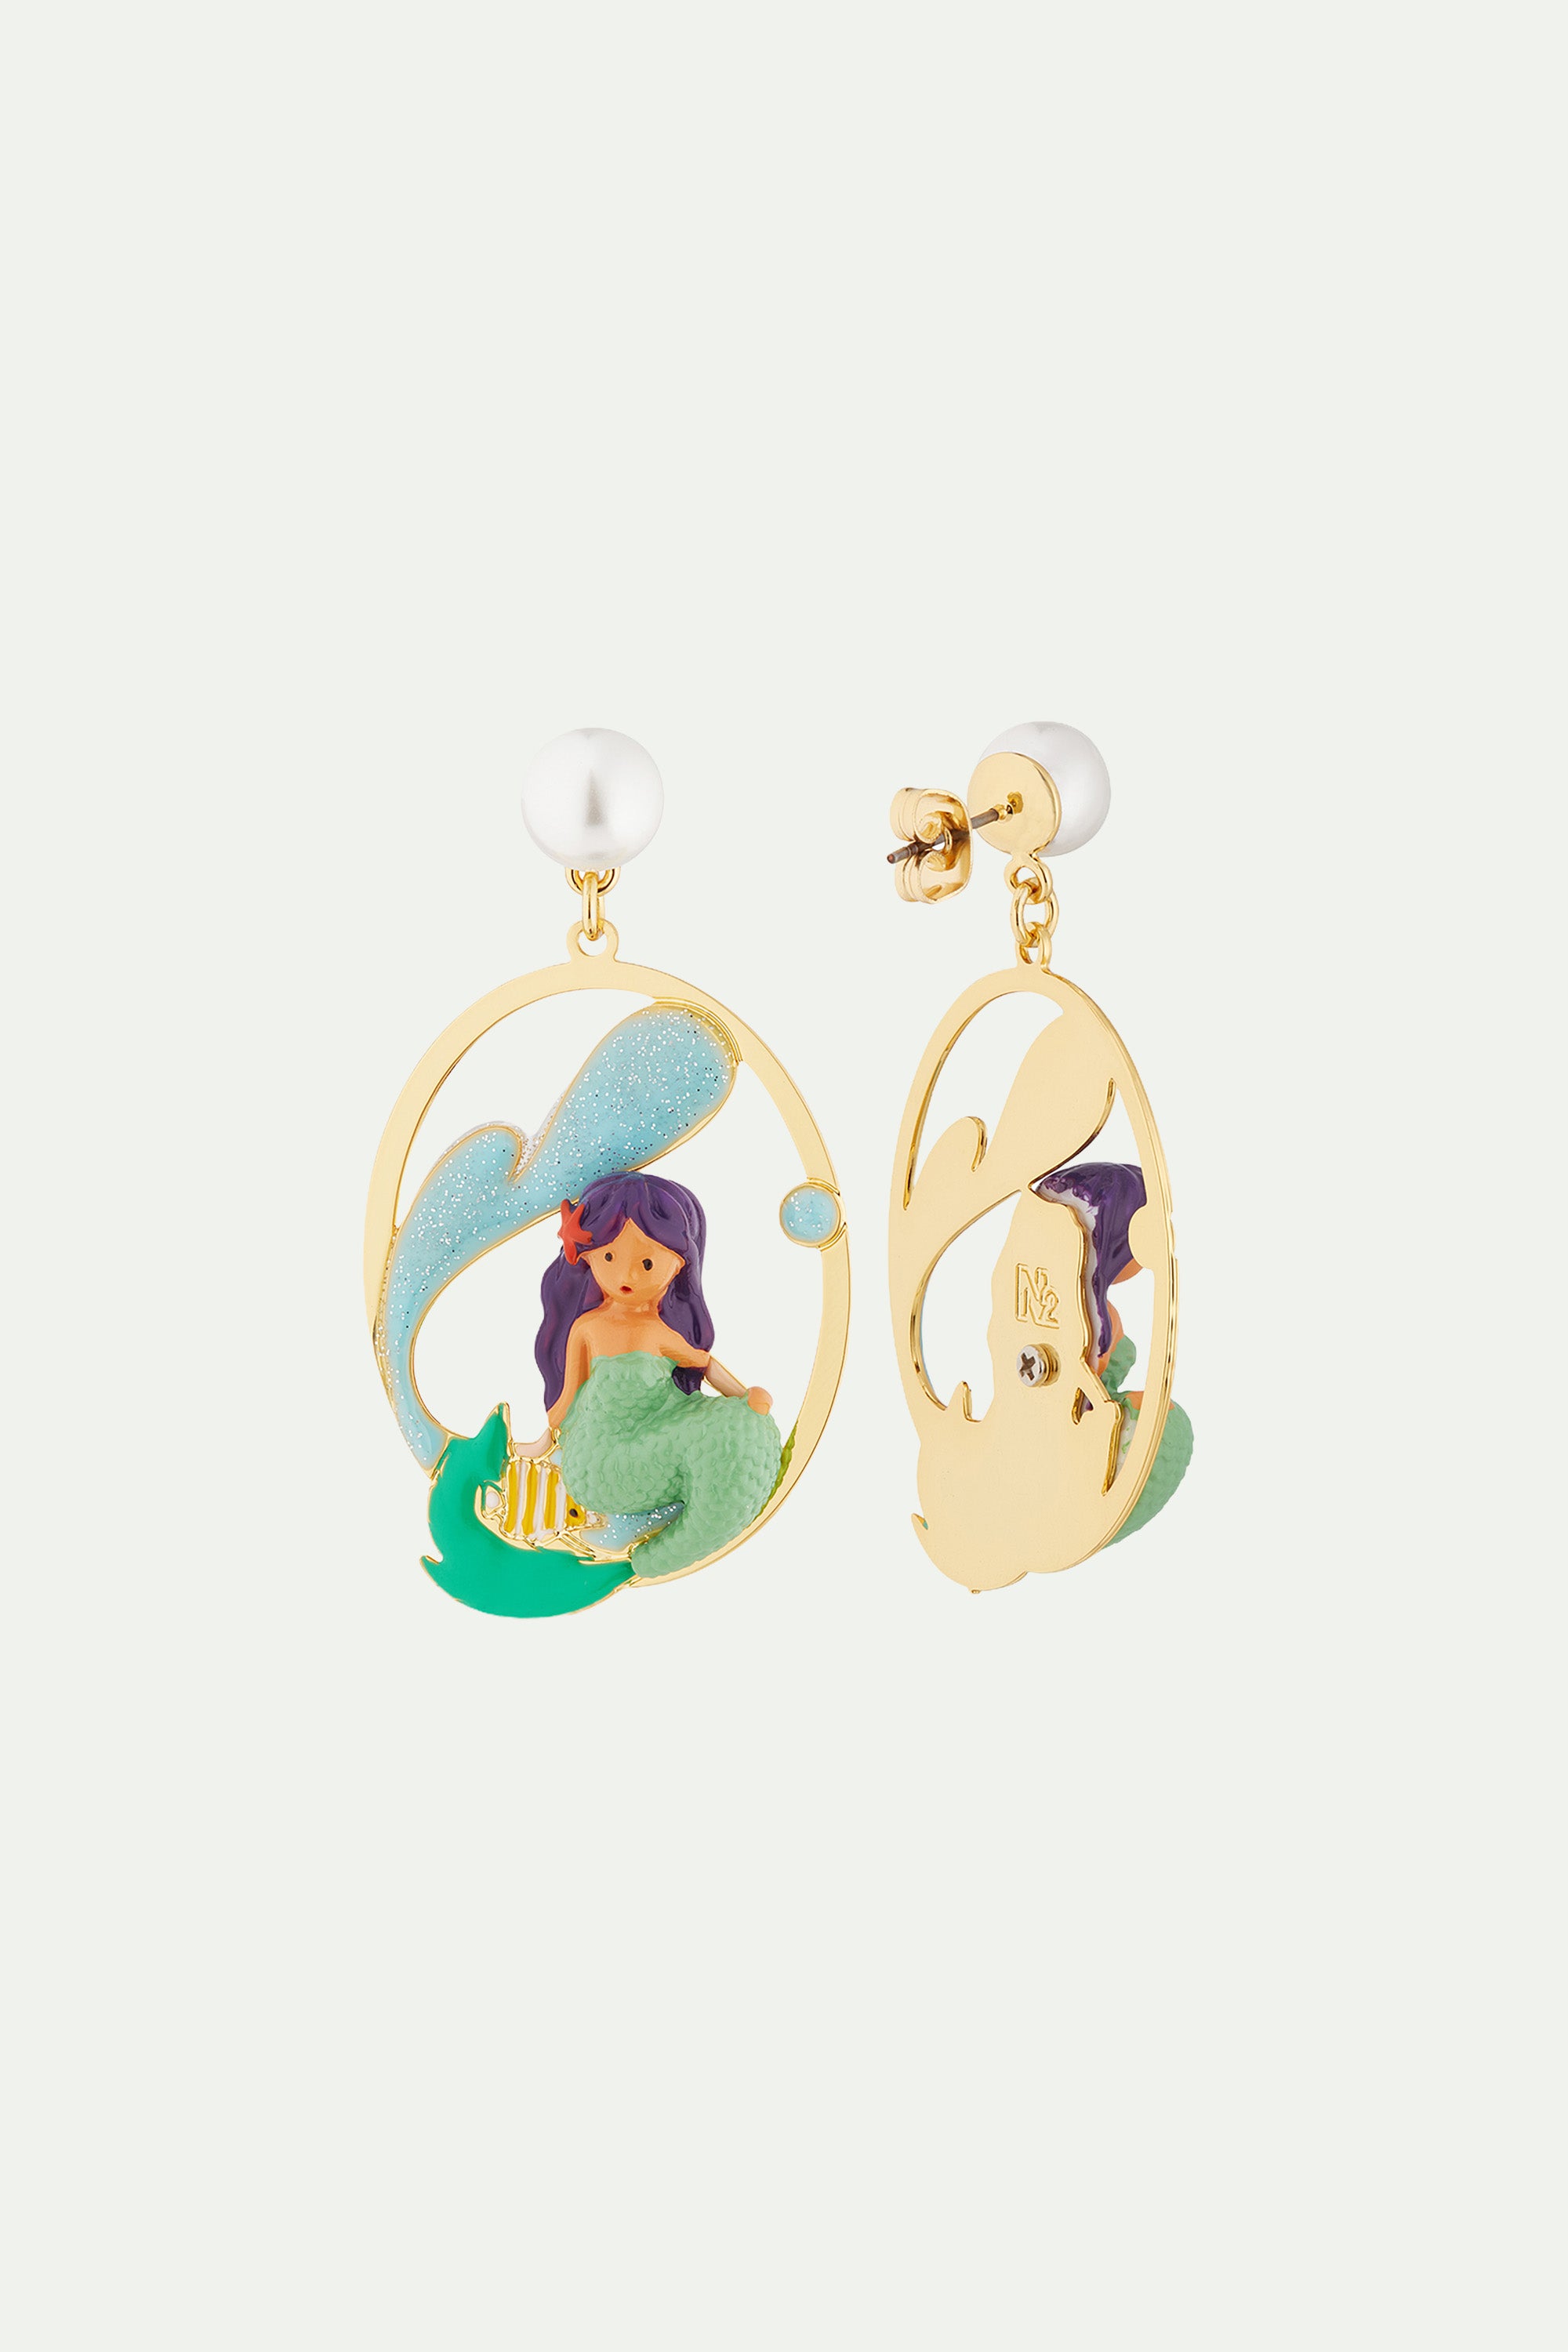 Mermaid and wave post earrings